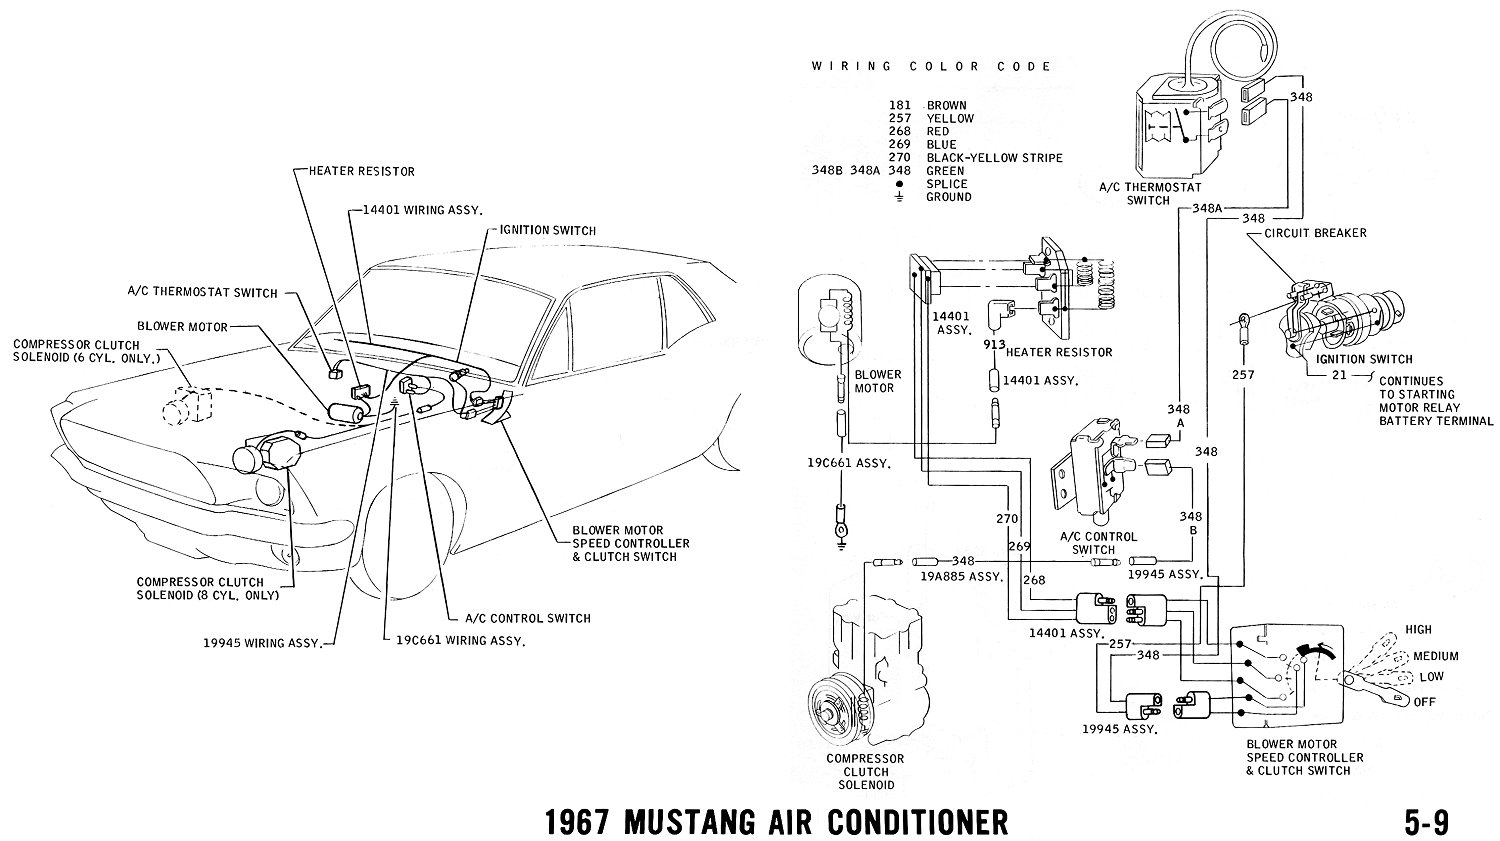 1967 Mustang Wiring And Vacuum Diagrams - Average Joe Restoration - Western Plow Wiring Diagram